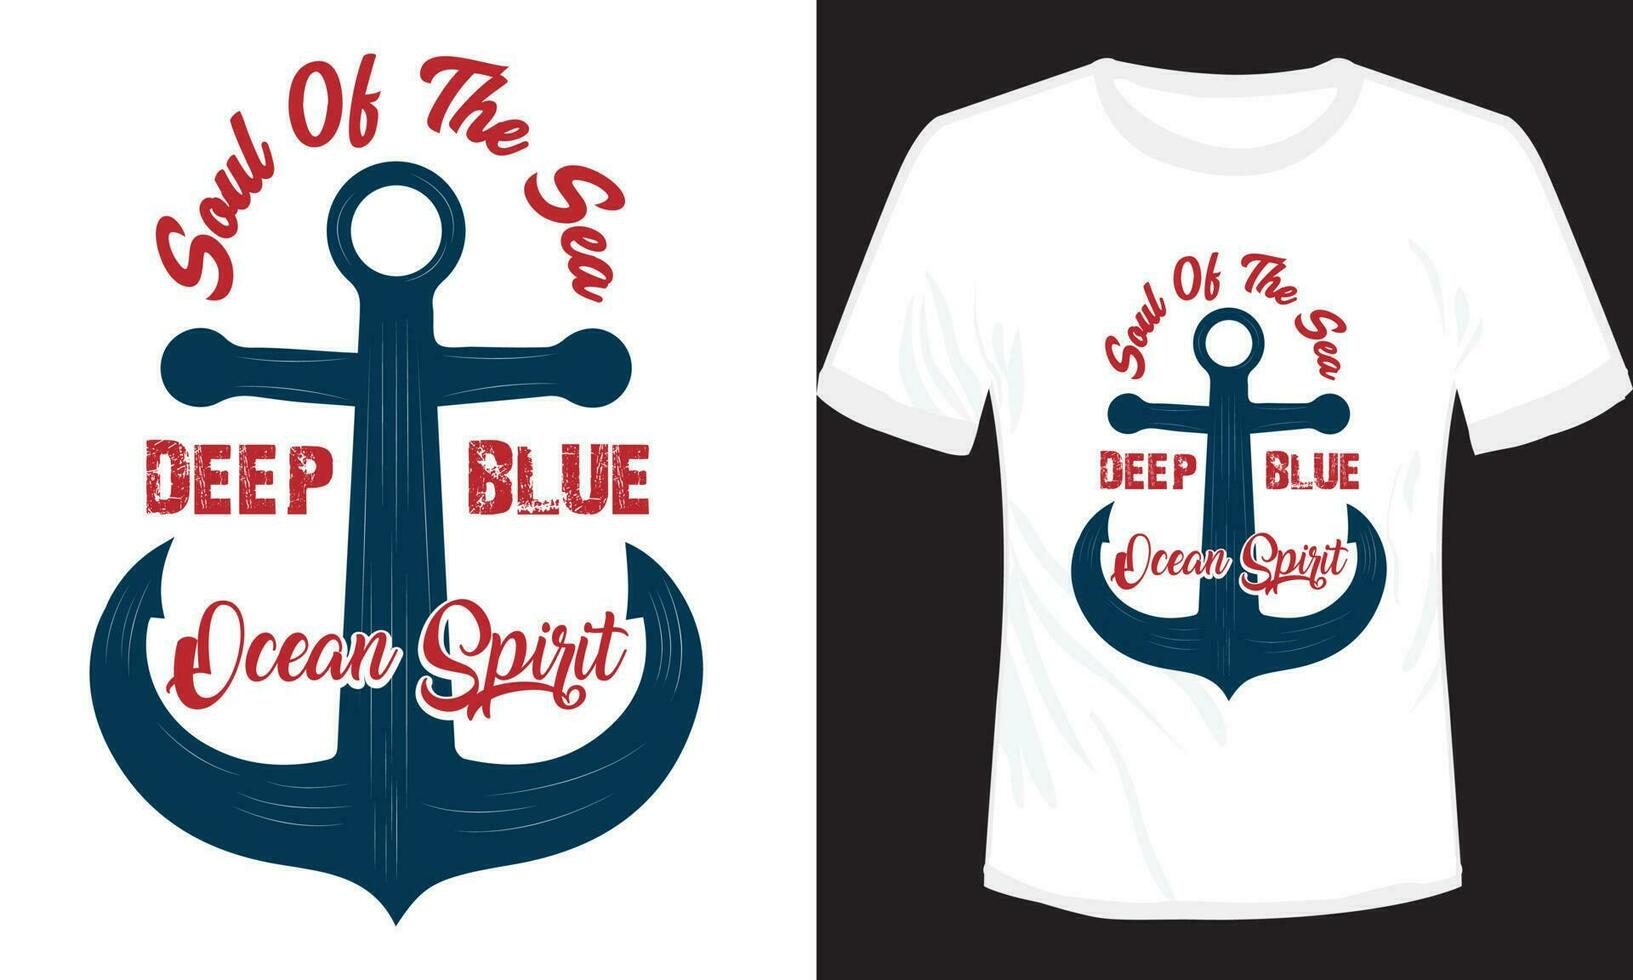 själ av de hav djup blå t-shirt design vektor illustration